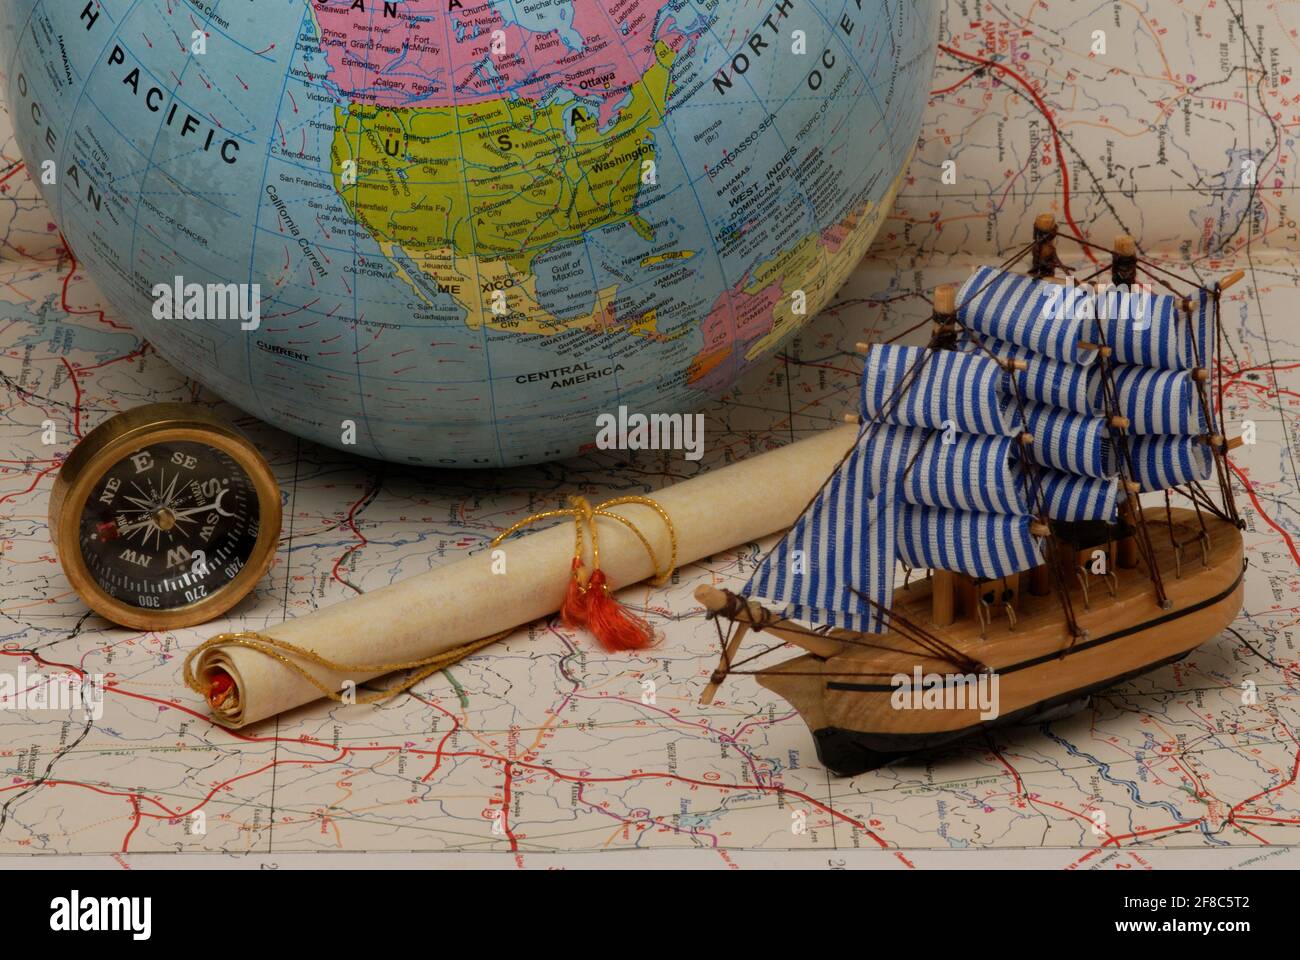 Mumbai, Maharashtra, Inde, Asie, septembre 05, 2006 - Old Pirate voilier; maquette de bateau; Compass; Globe on Old mapTravel, concept d'aventure Banque D'Images